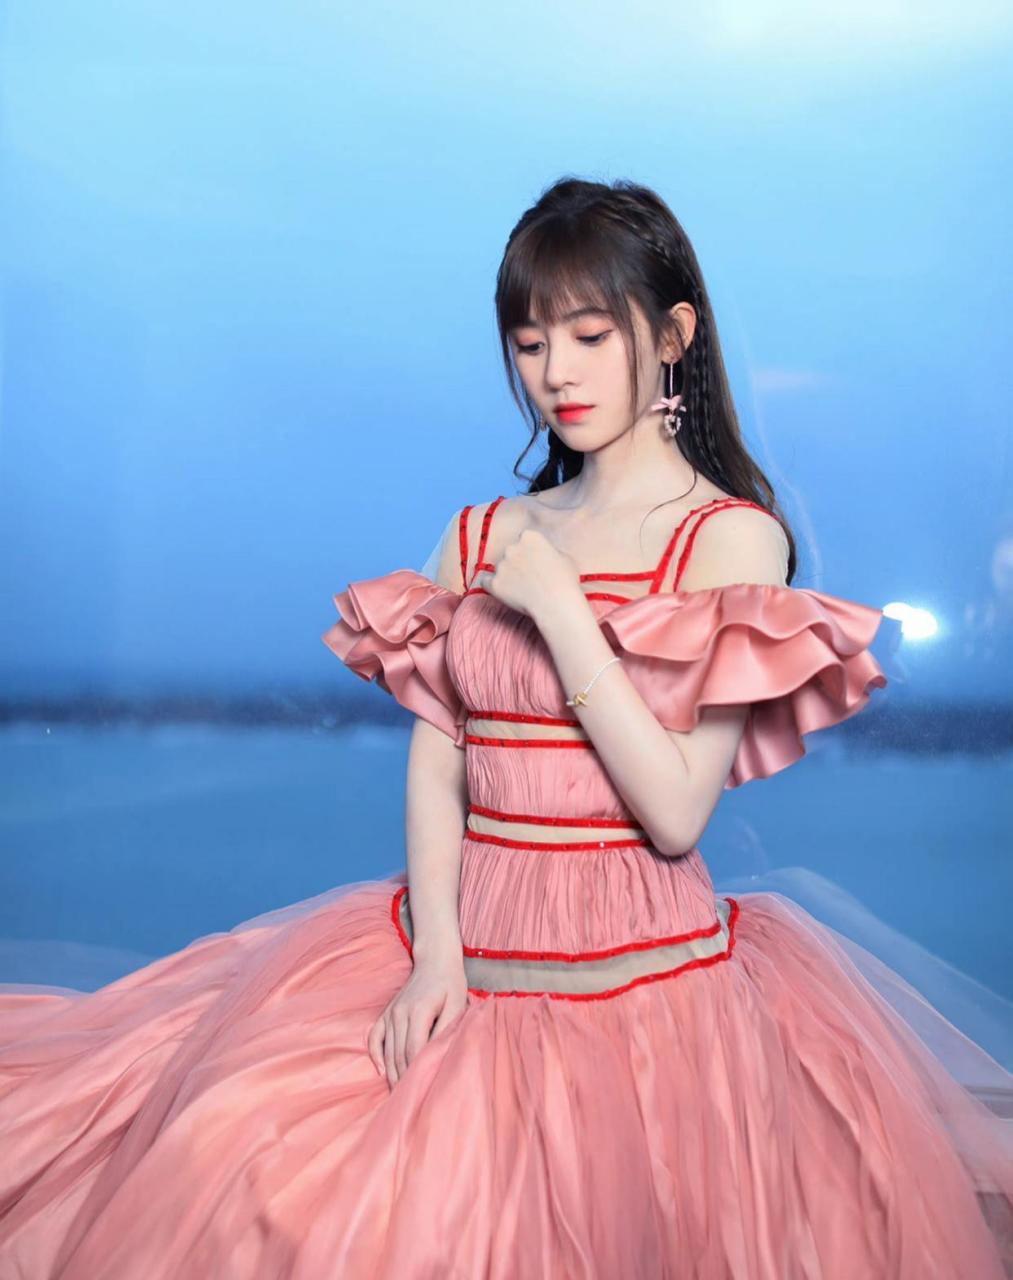 鞠婧祎美女,穿橘粉色裙子好洋气